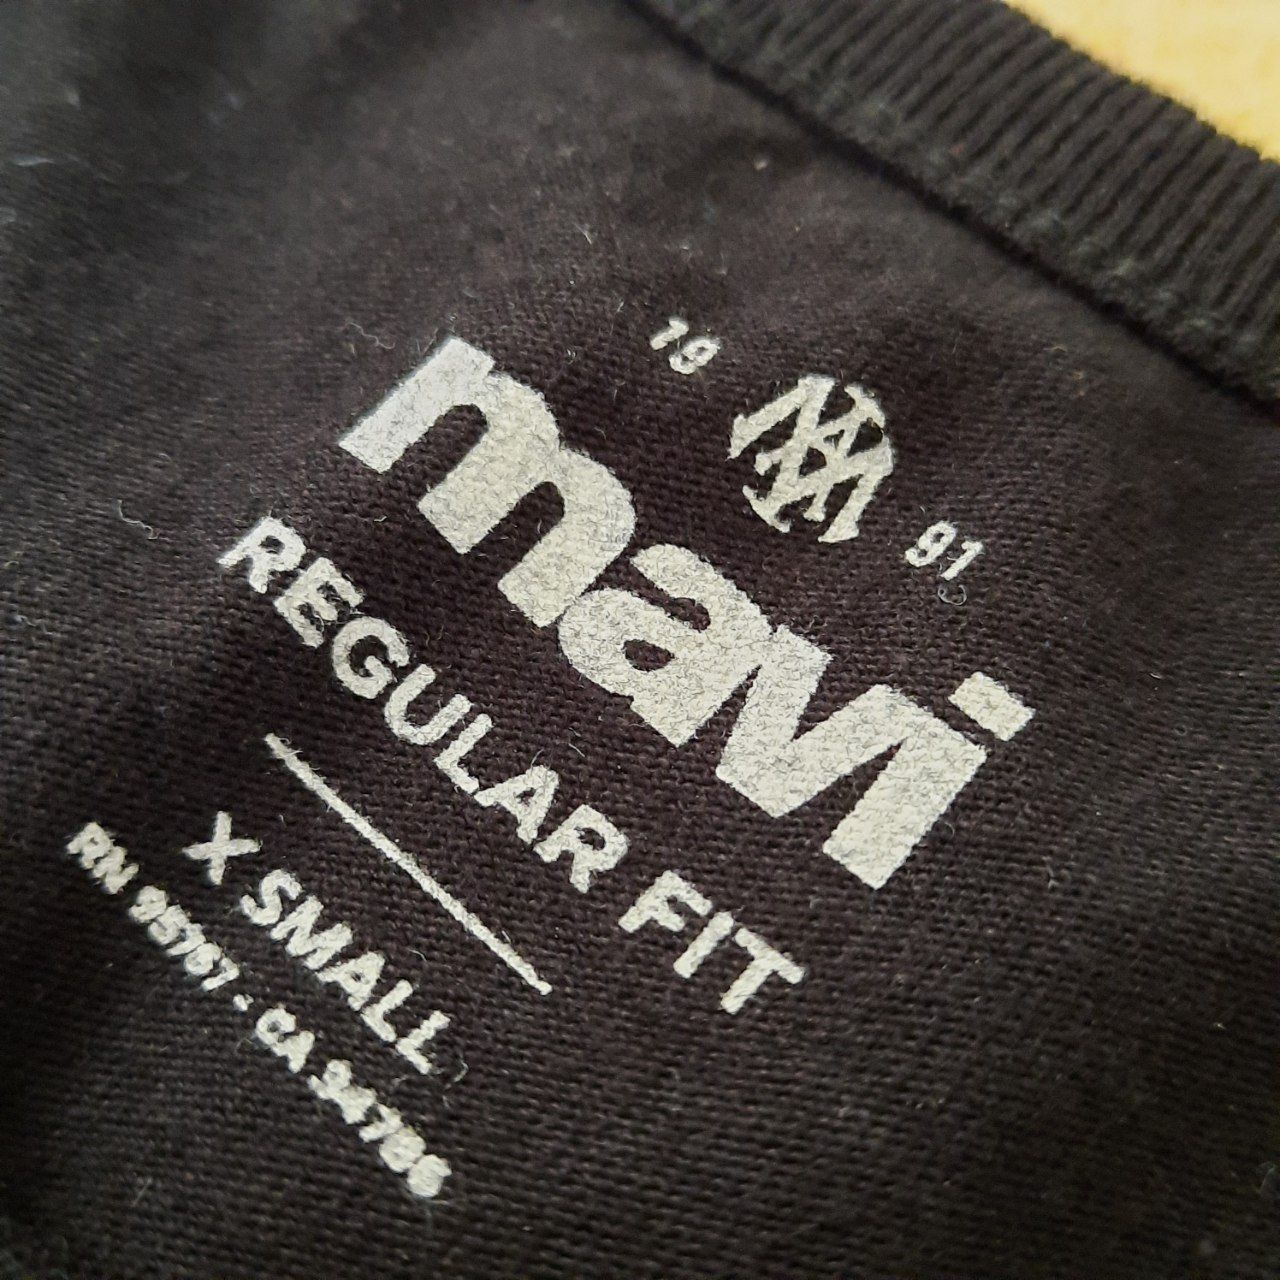 تی شرت آستین کوتاه مردانه ماوی مدل m66 -  - 2